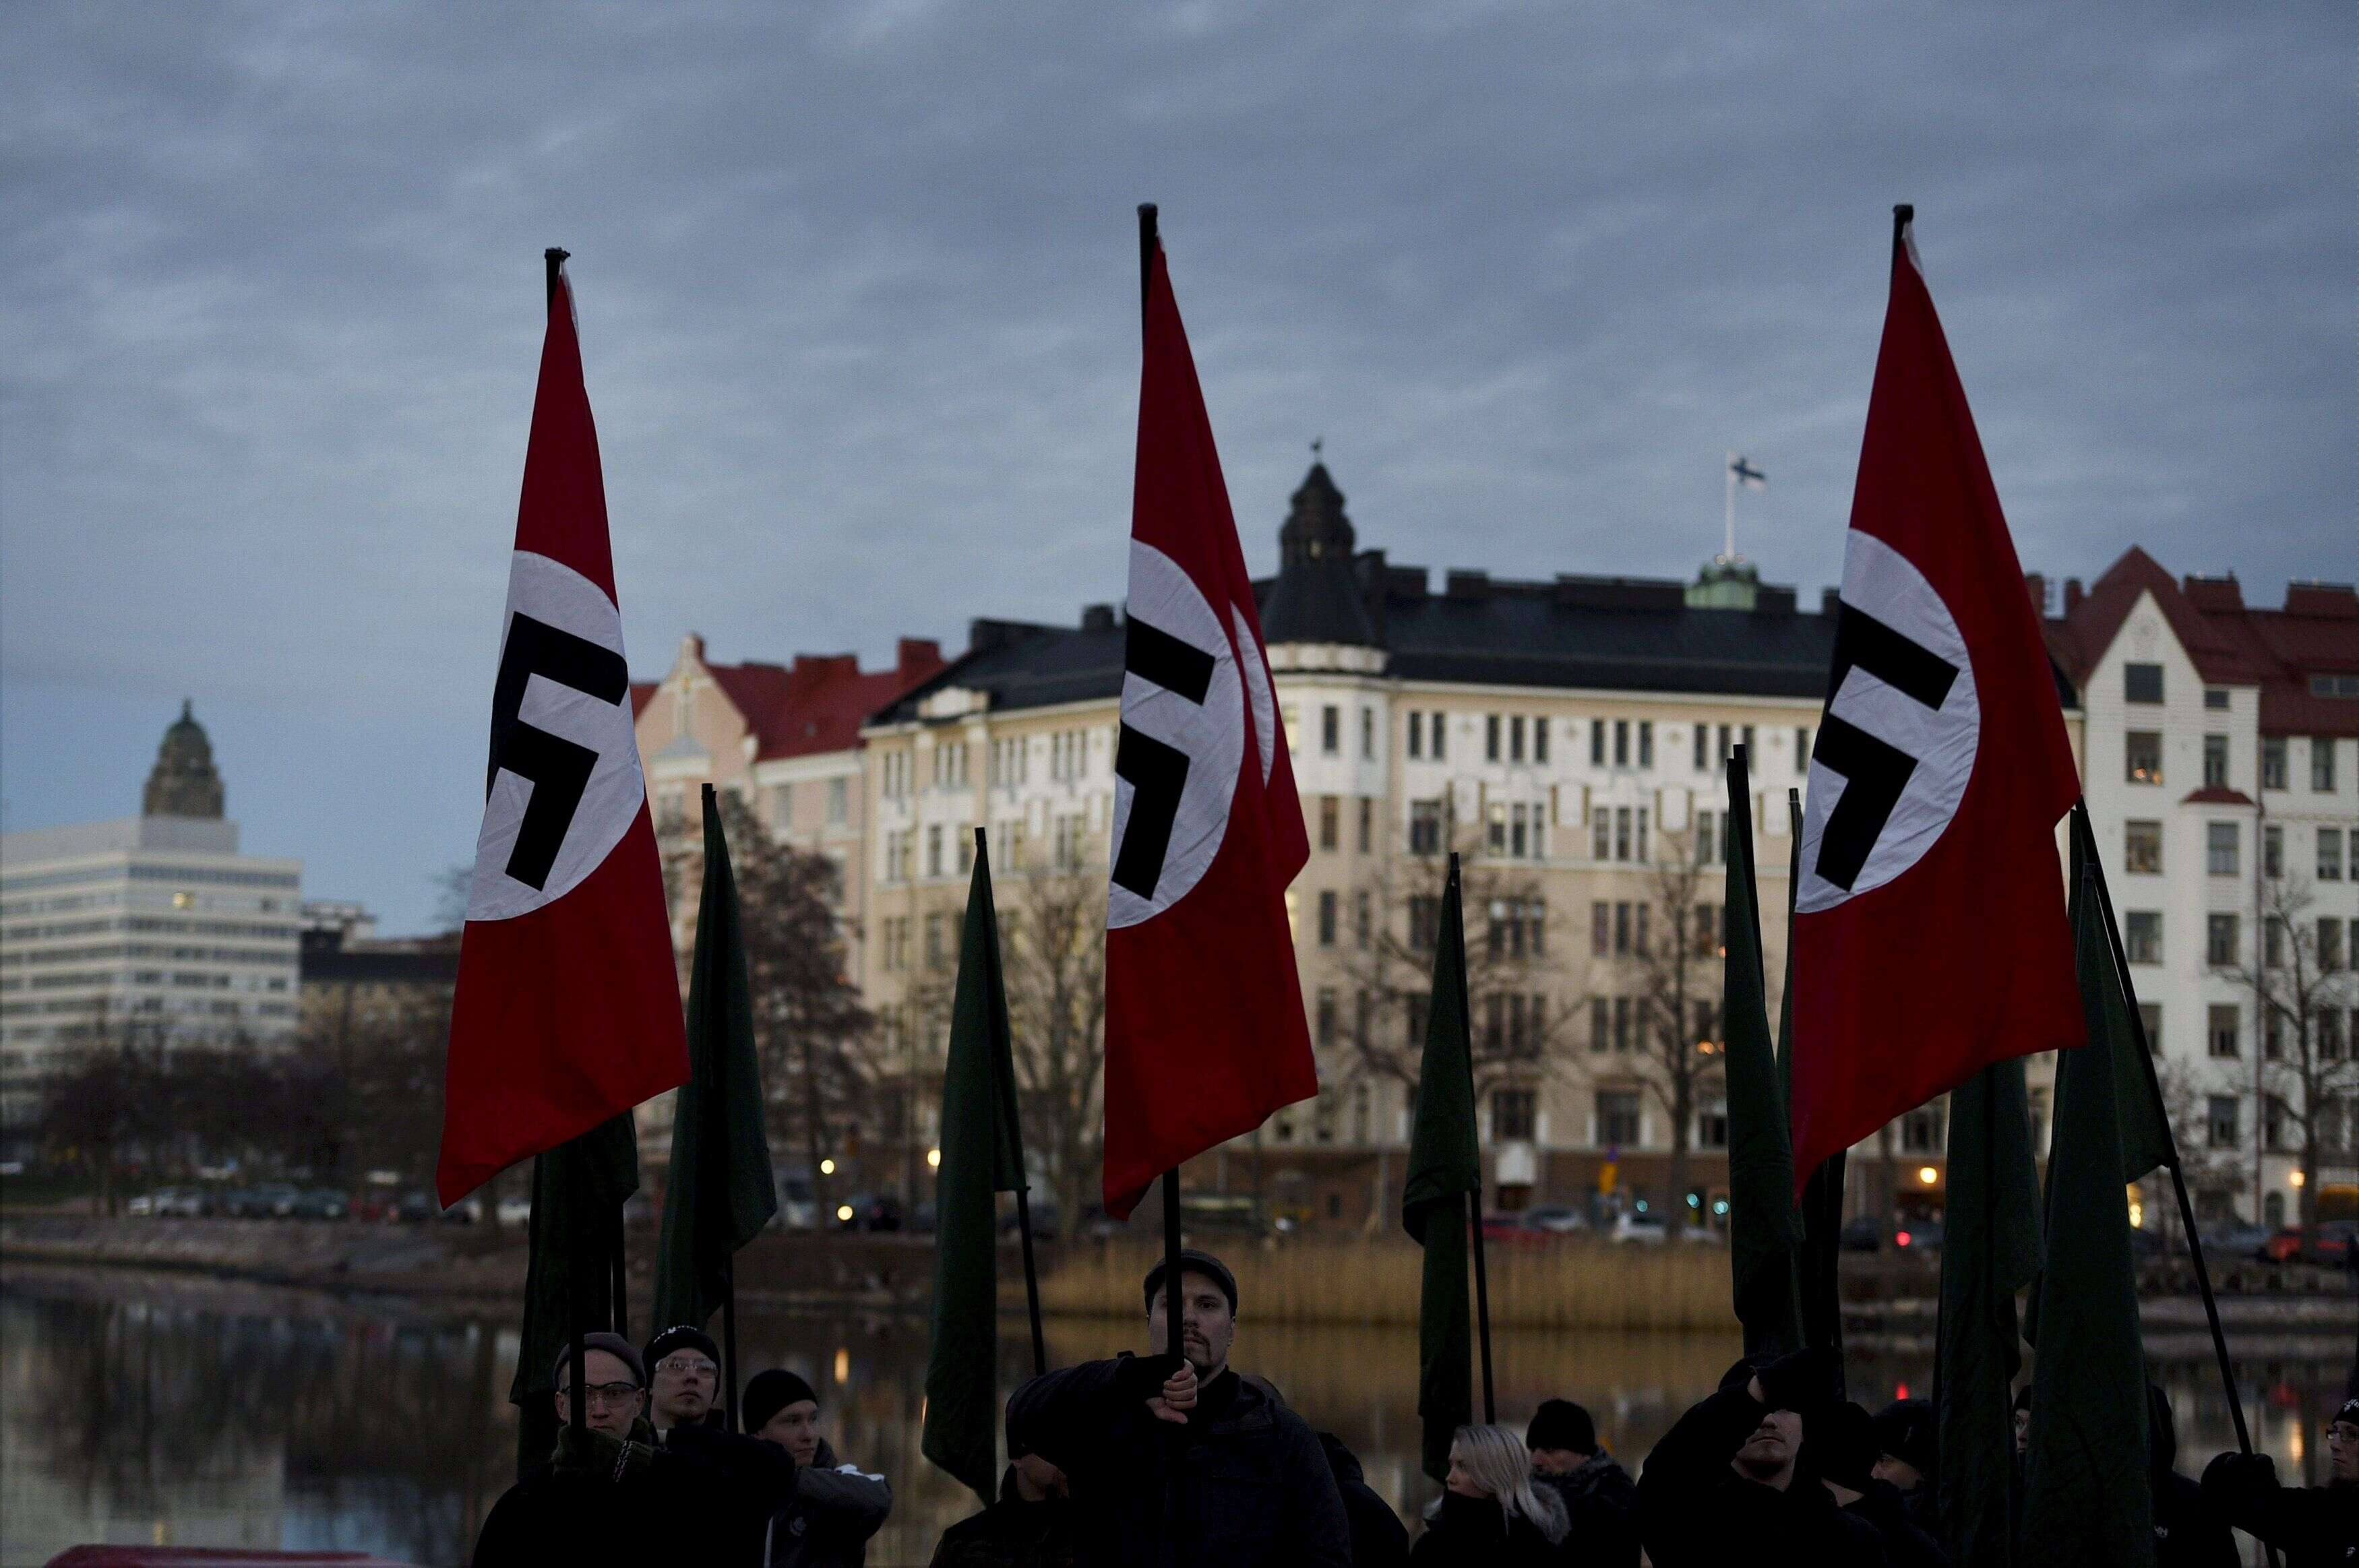 Des drapeaux nazis, photographiés lors d'un rassemblement de néo-nazis finlandais à Helsinki en décembre 2018.